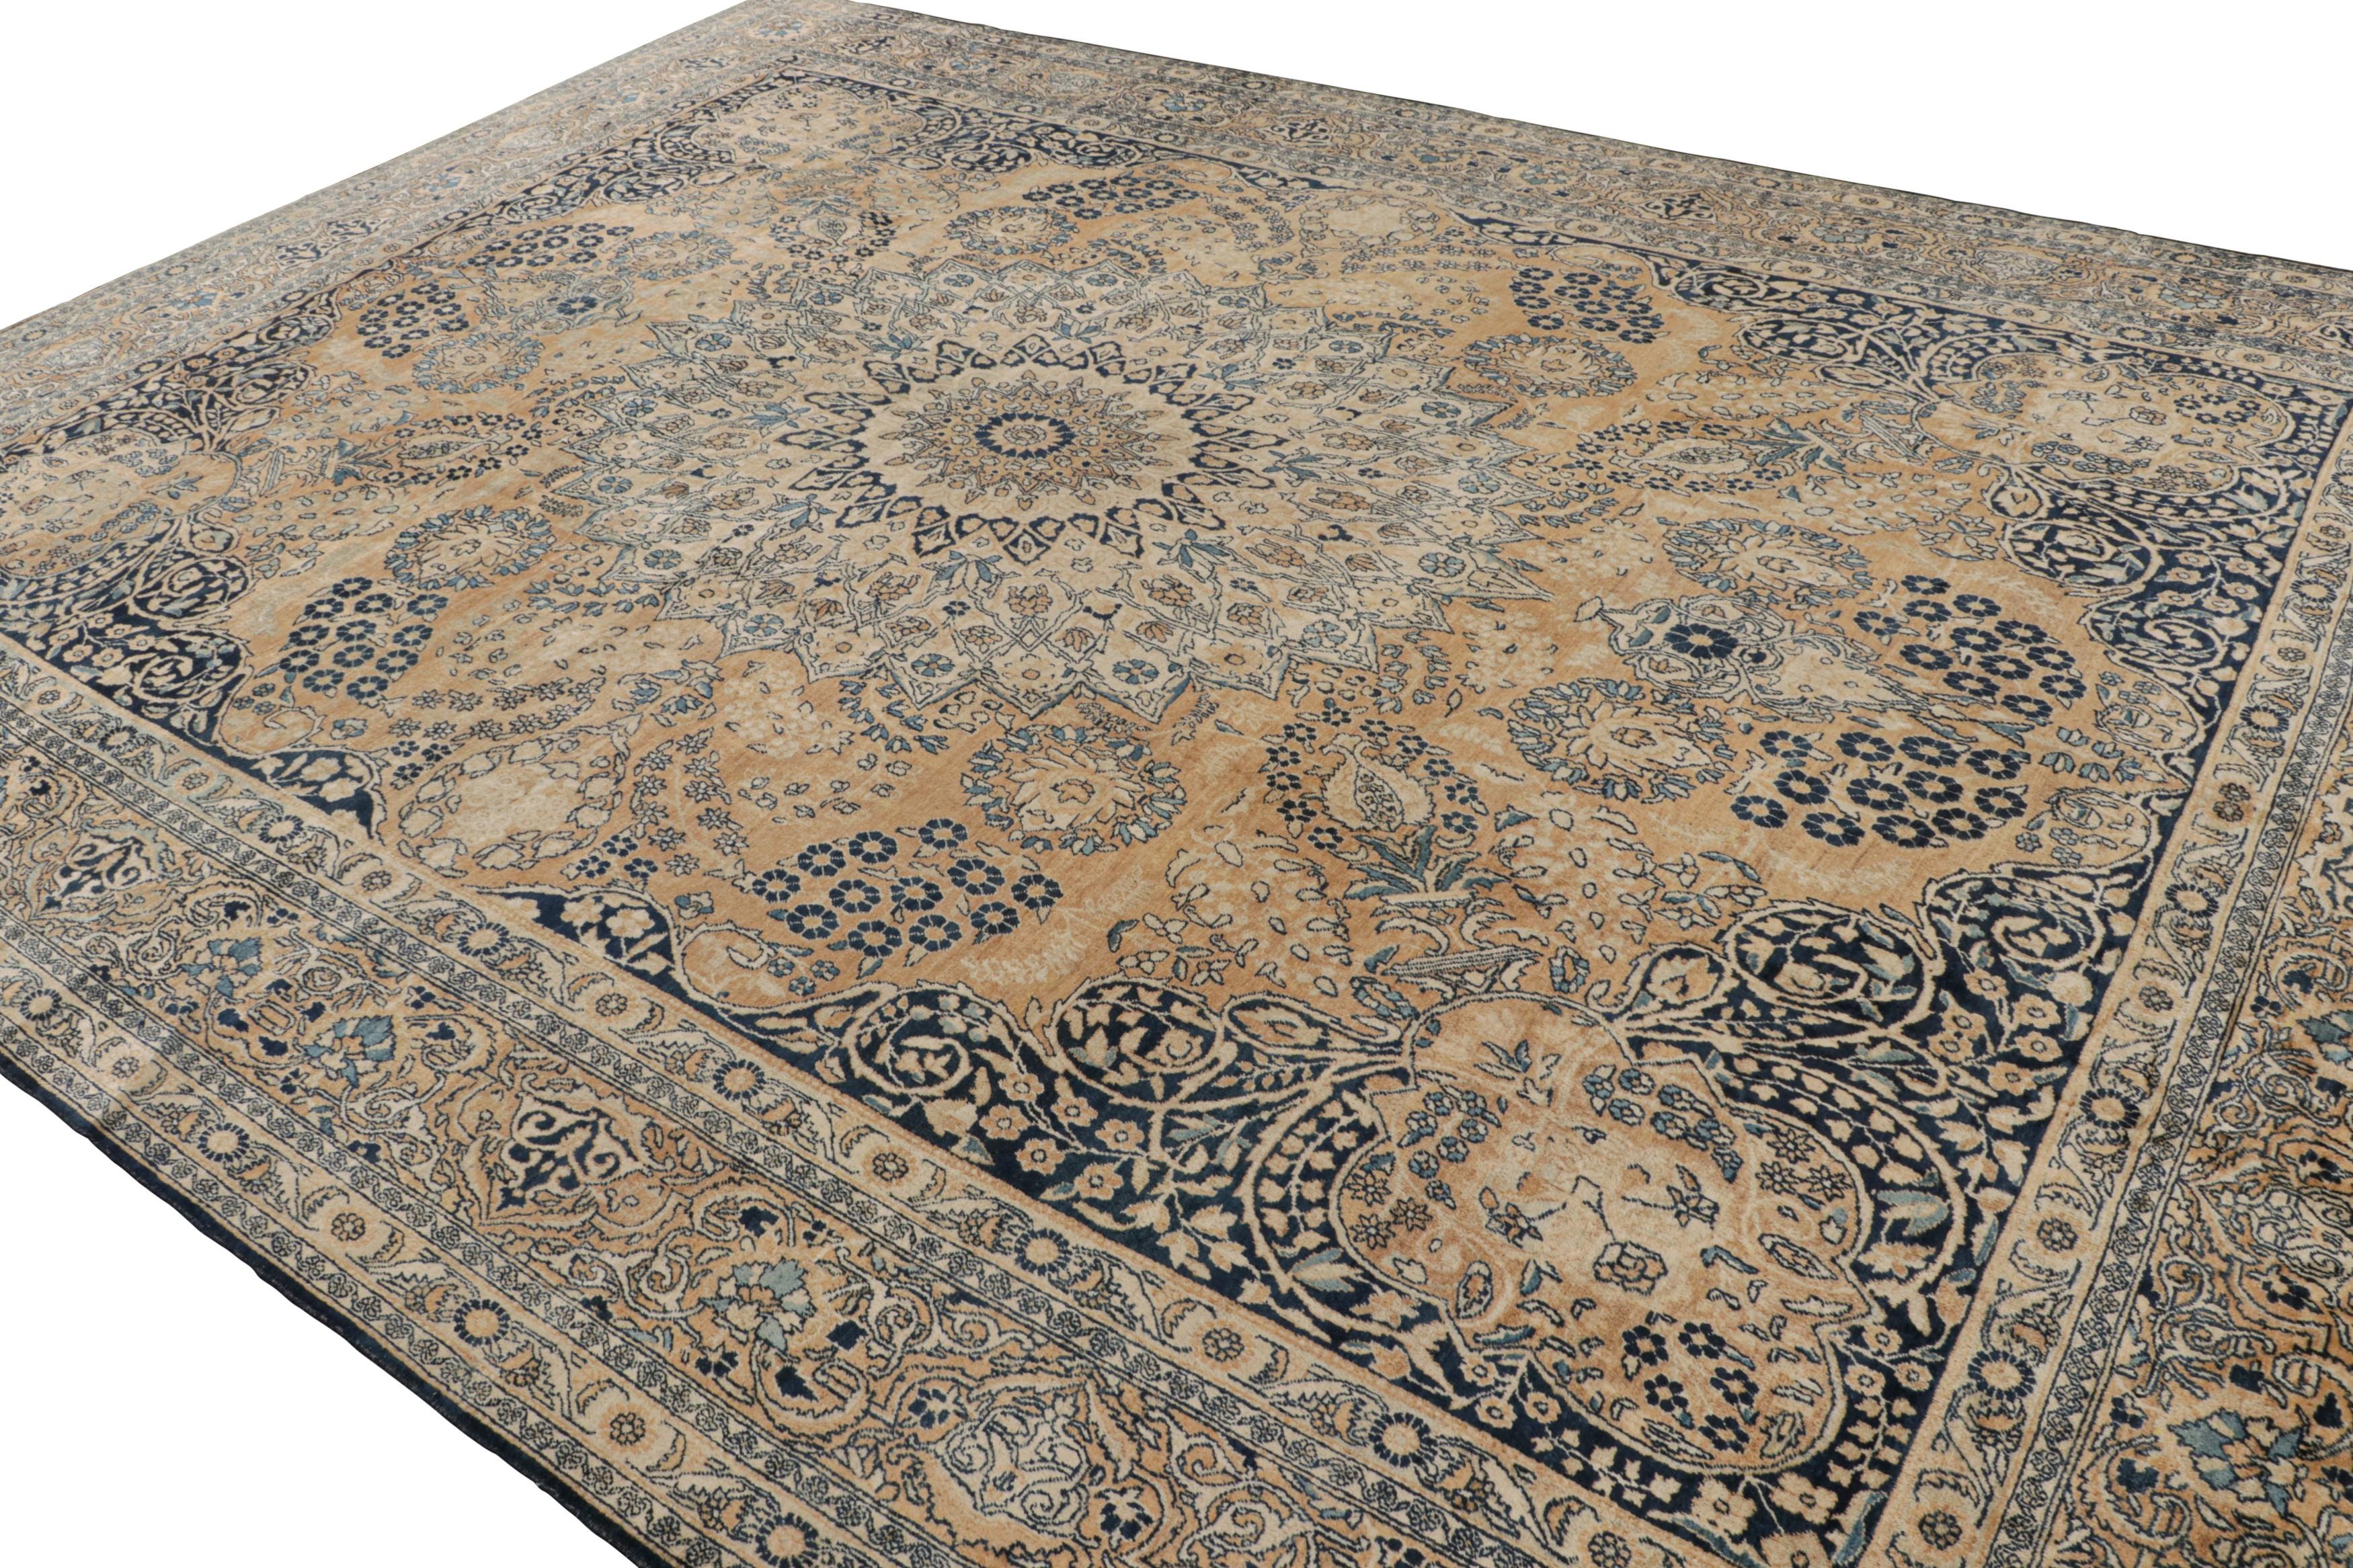 Handgeknüpfter Wollteppich, ein antiker 11x14 persischer Yazd-Teppich aus den 1920er Jahren - kuratiert von Rug & Kilim

Über das Design:

Der Teppich gehört zu einer Provenienz, die in ihrer Schönheit mit den Kerman Lavar Teppichen vergleichbar